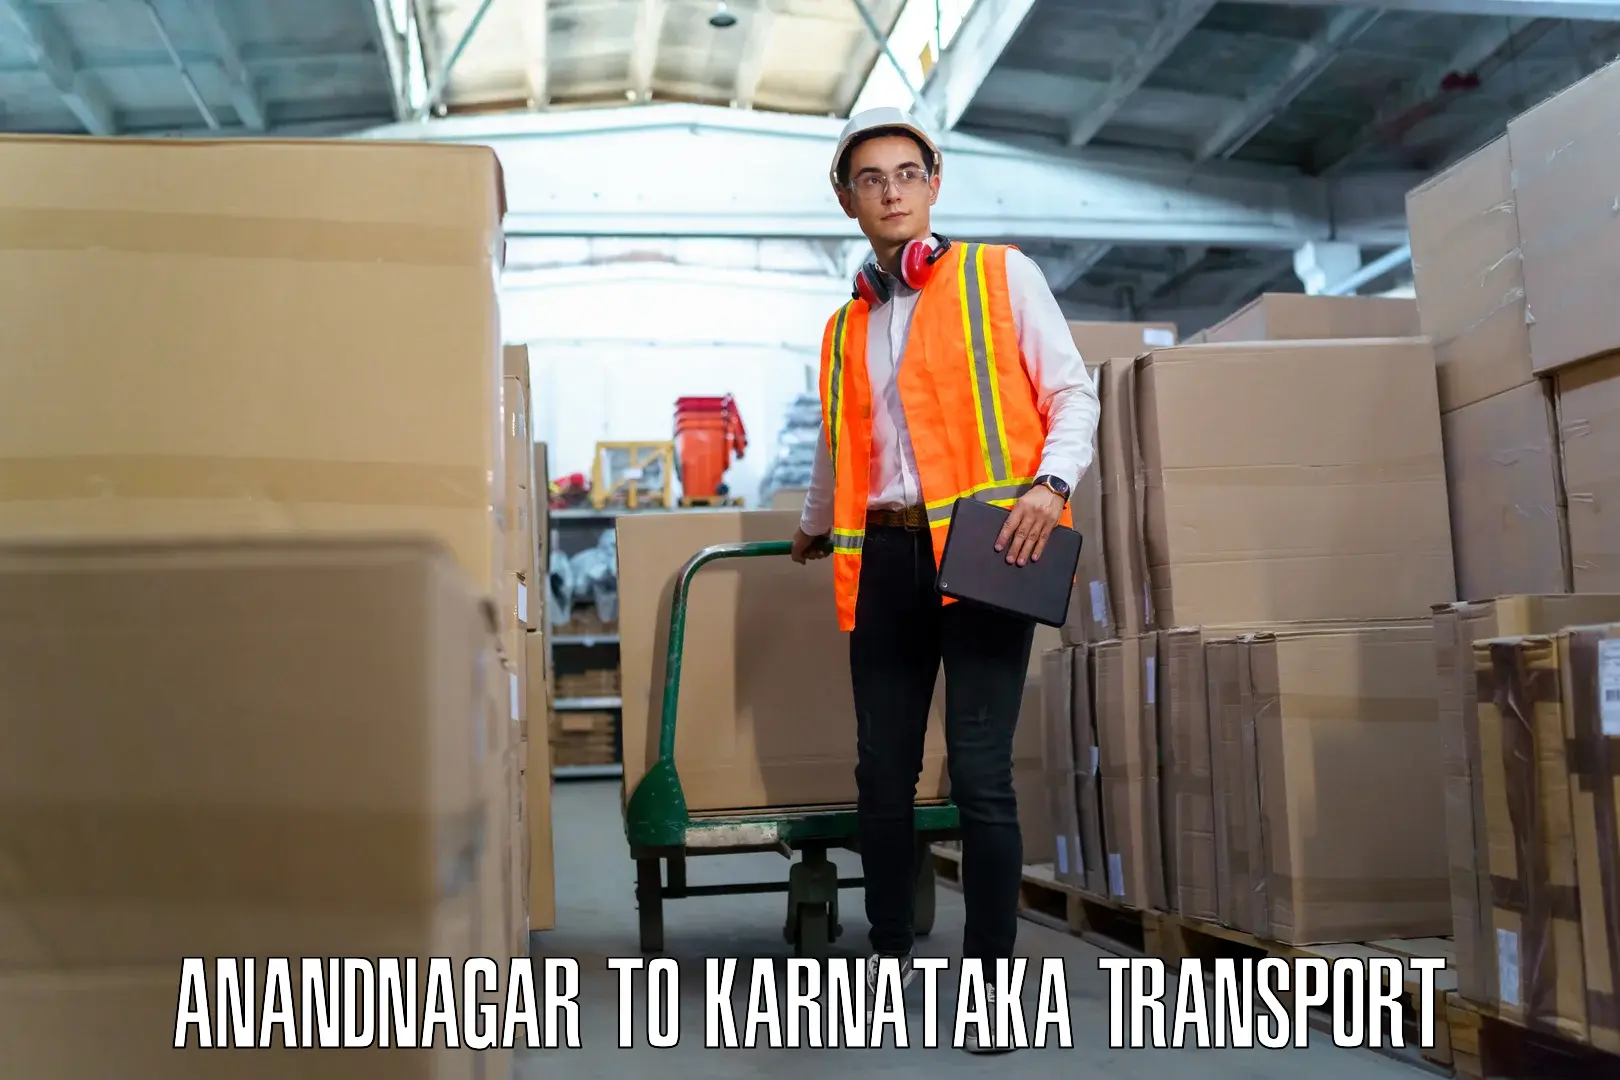 Nearest transport service Anandnagar to Mandya